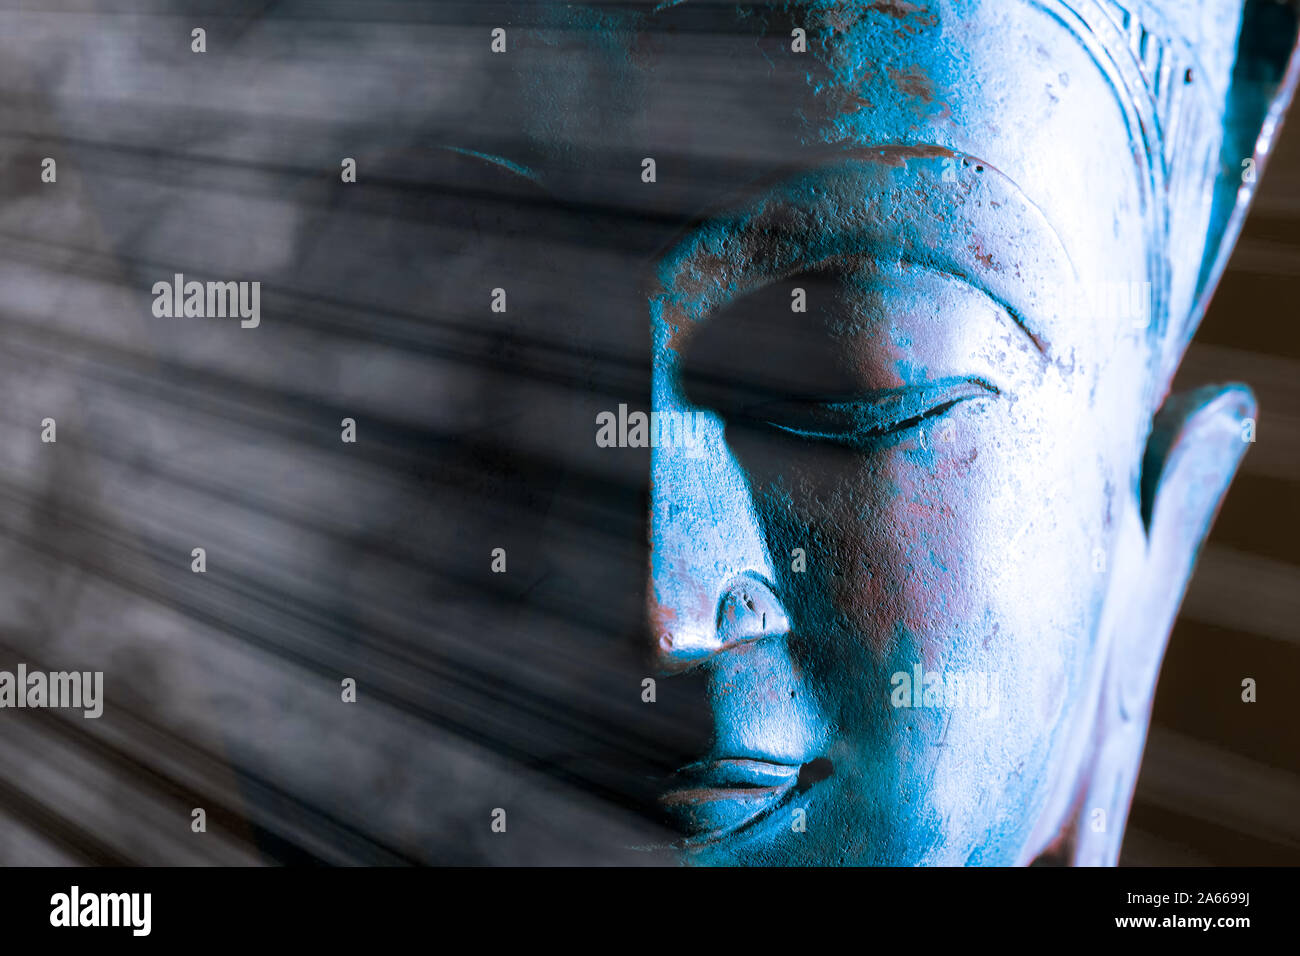 Visage Bouddha close-up. L'illumination spirituelle. Le bouddhisme zen. Statue traditionnelle thaïlandaise avec lumière éthérée. Image méditation ton bleu pacifique. Awakeni Banque D'Images